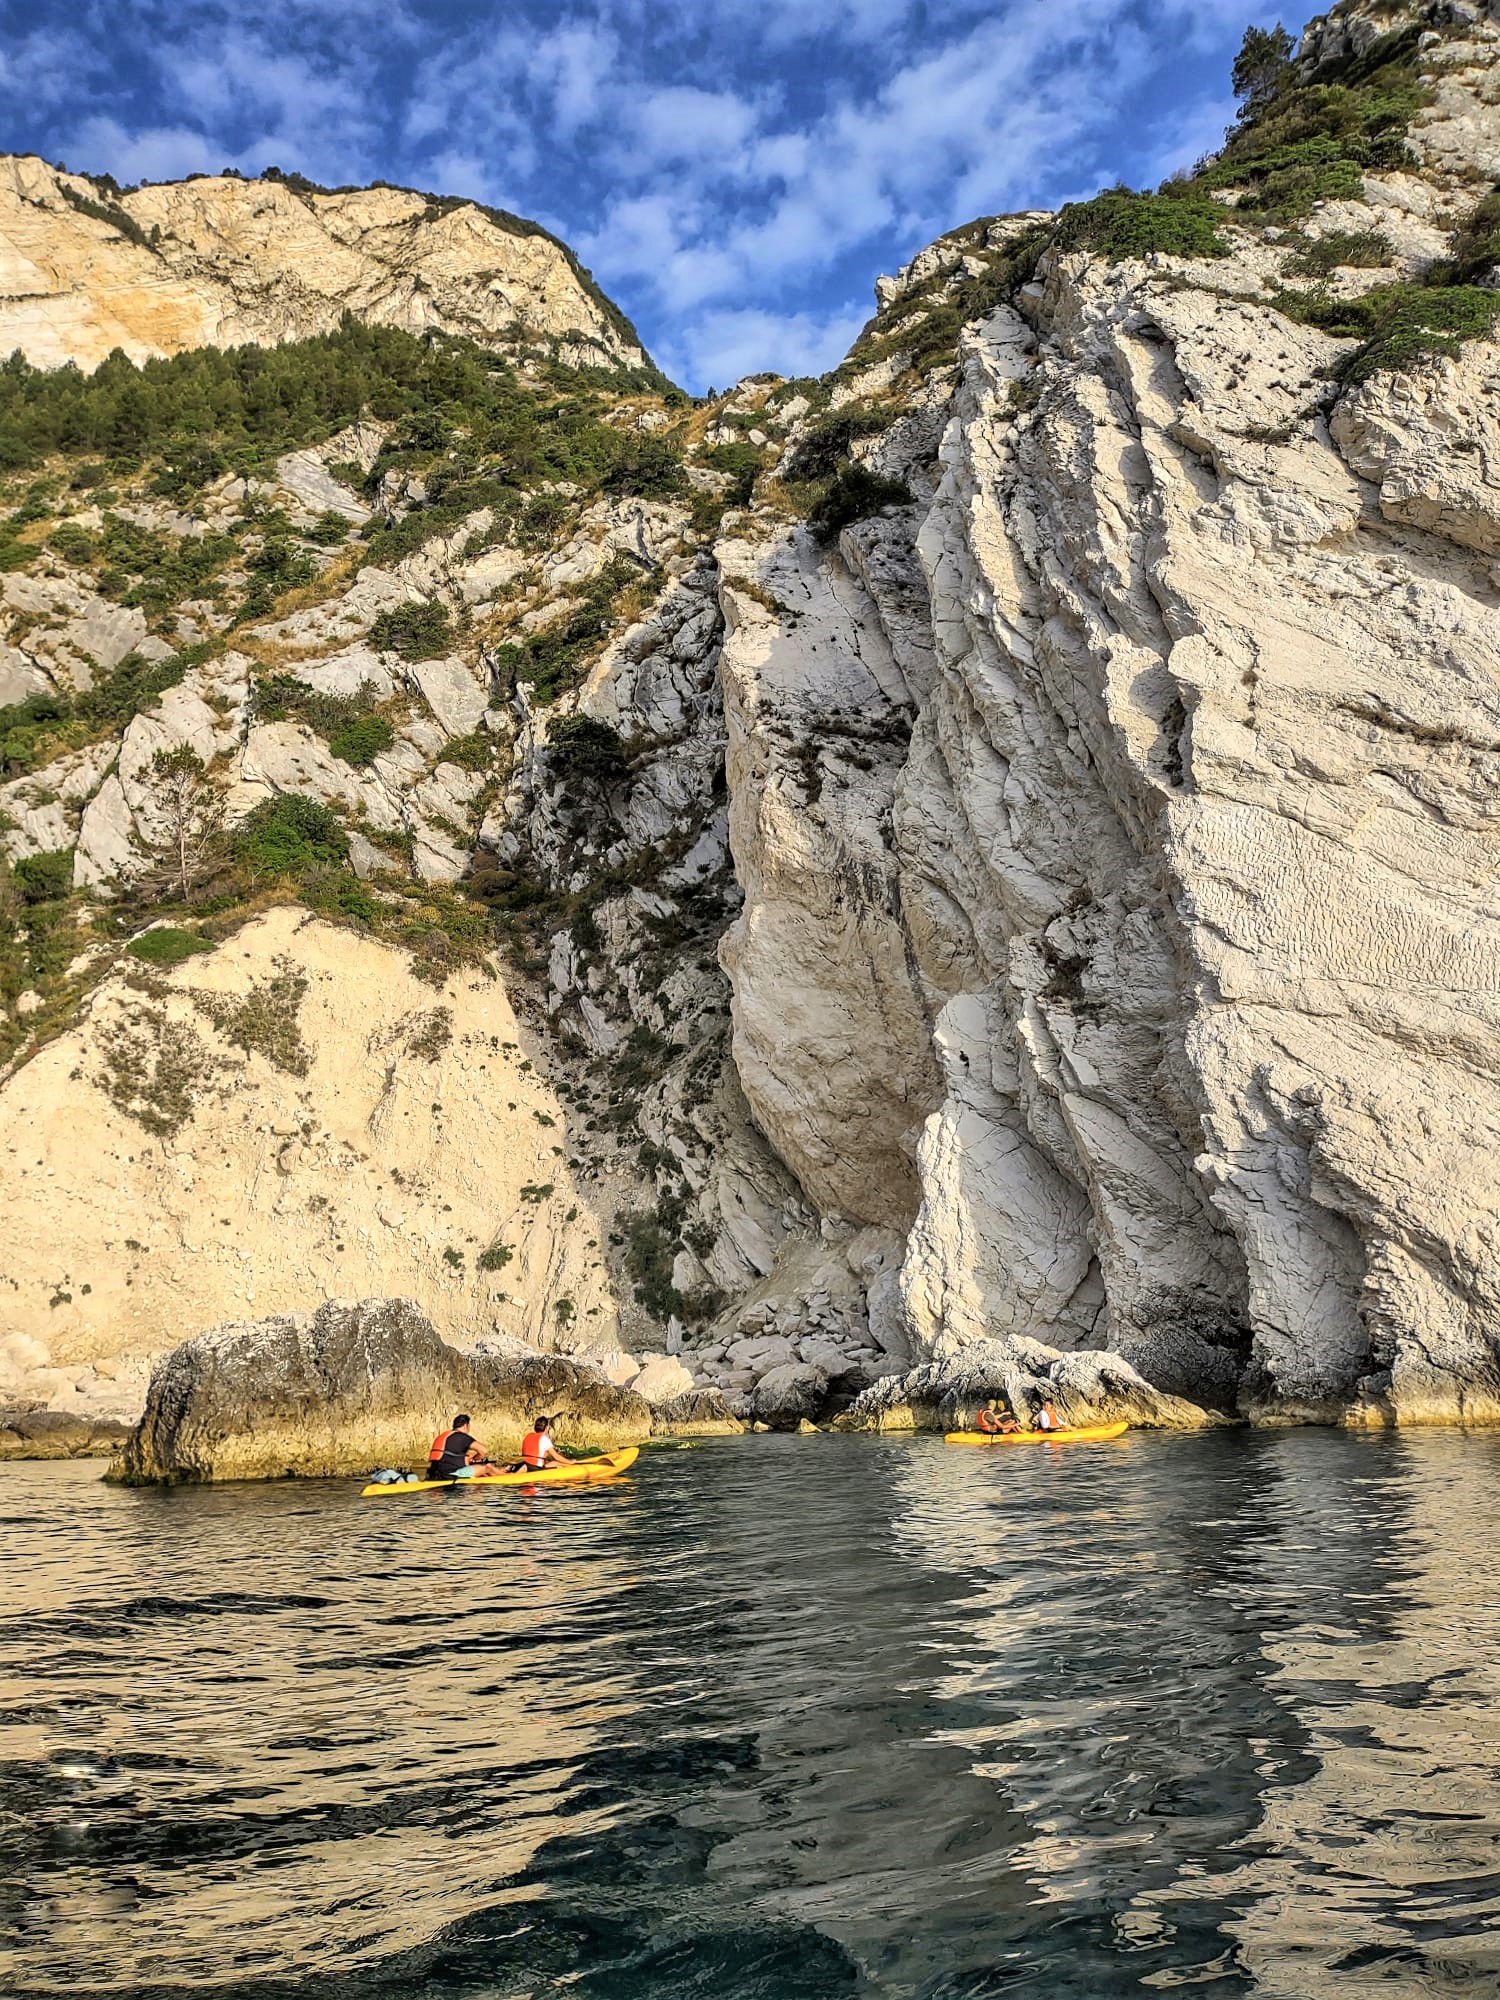 Canoe Sup paesaggio grotte bellezze numana sirolo riviera ancona marche italia pagaia giubbotto salvataggio gita noleggio 